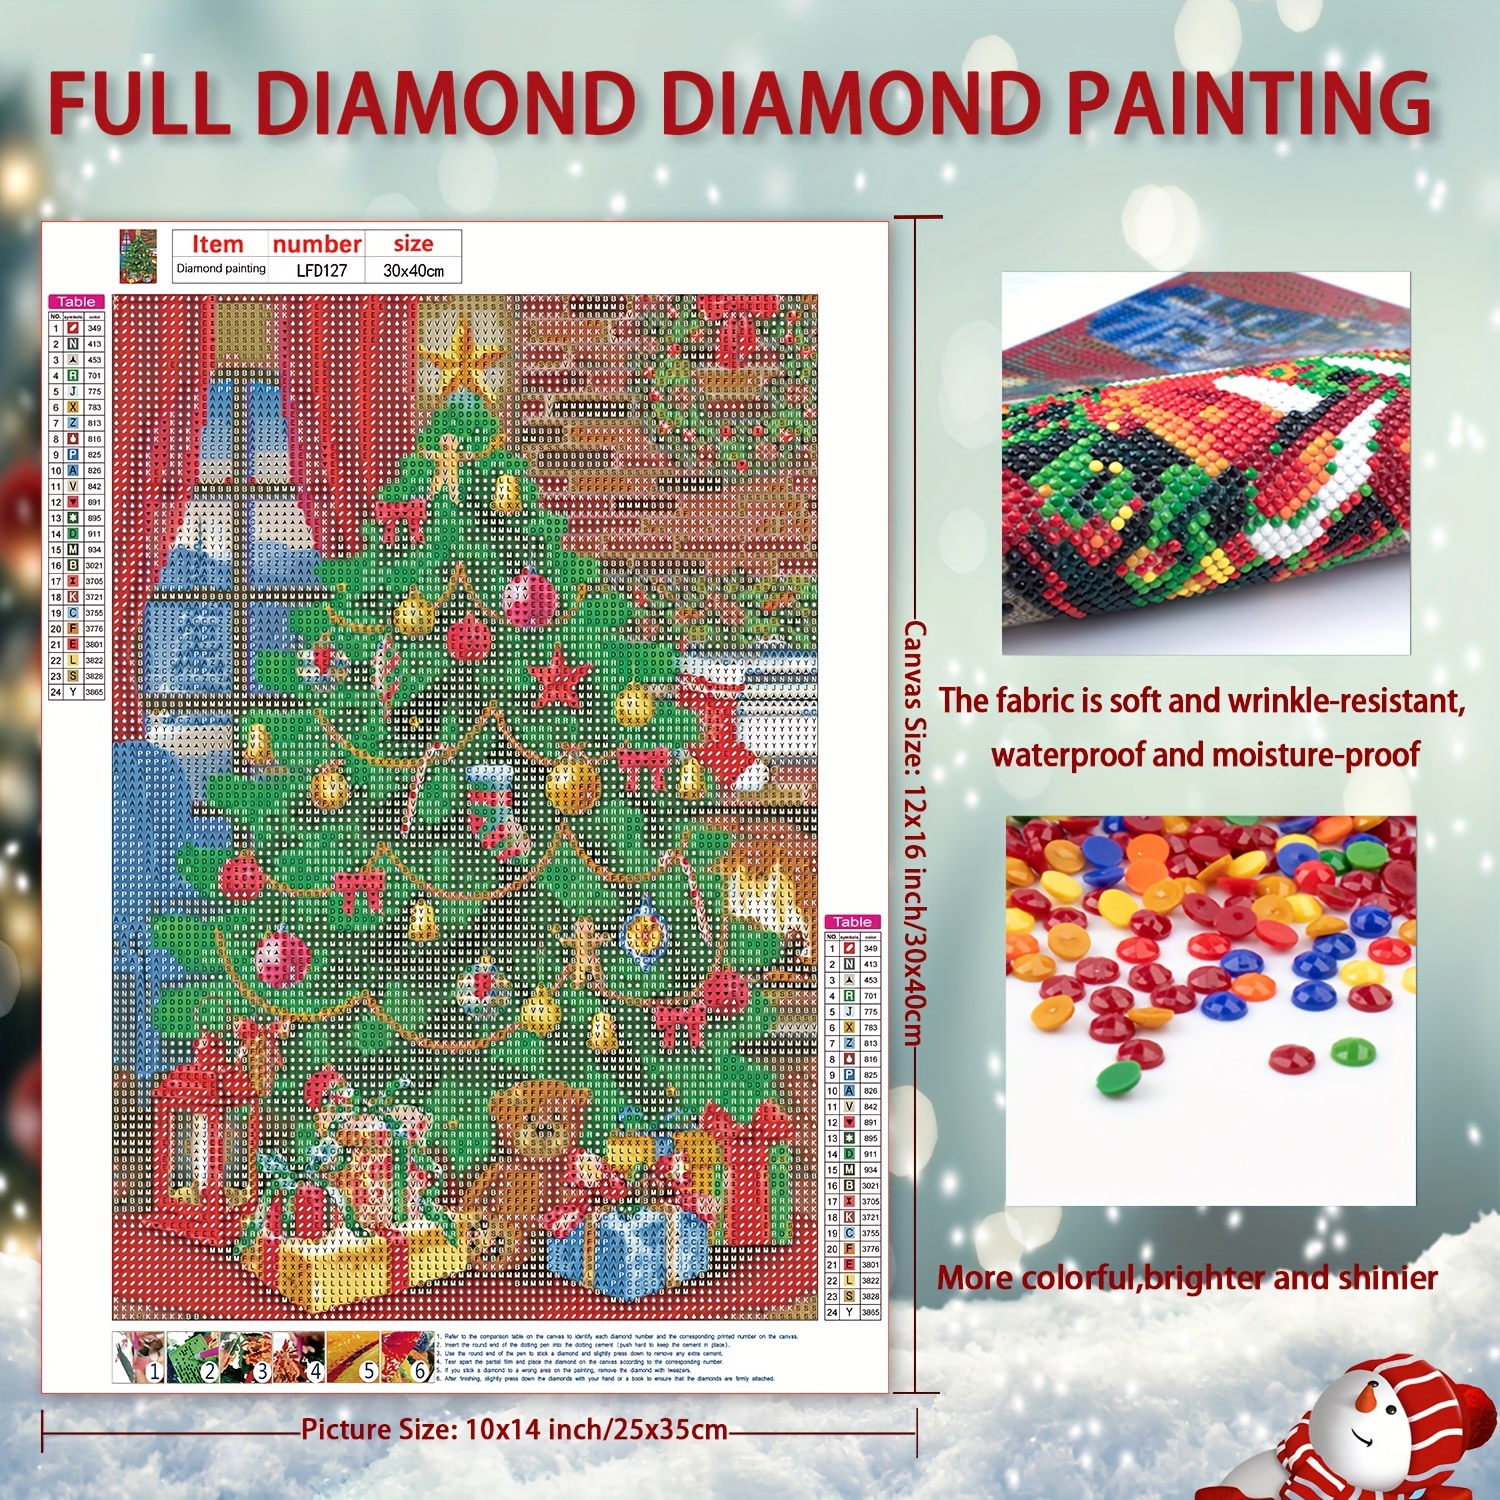 Cardinal Diamond Art Kits for Adults - Christmas Diamond Painting Kits for Adults Beginners,Gem Animal Art Kits for Adults Paint by Diamond Dots for